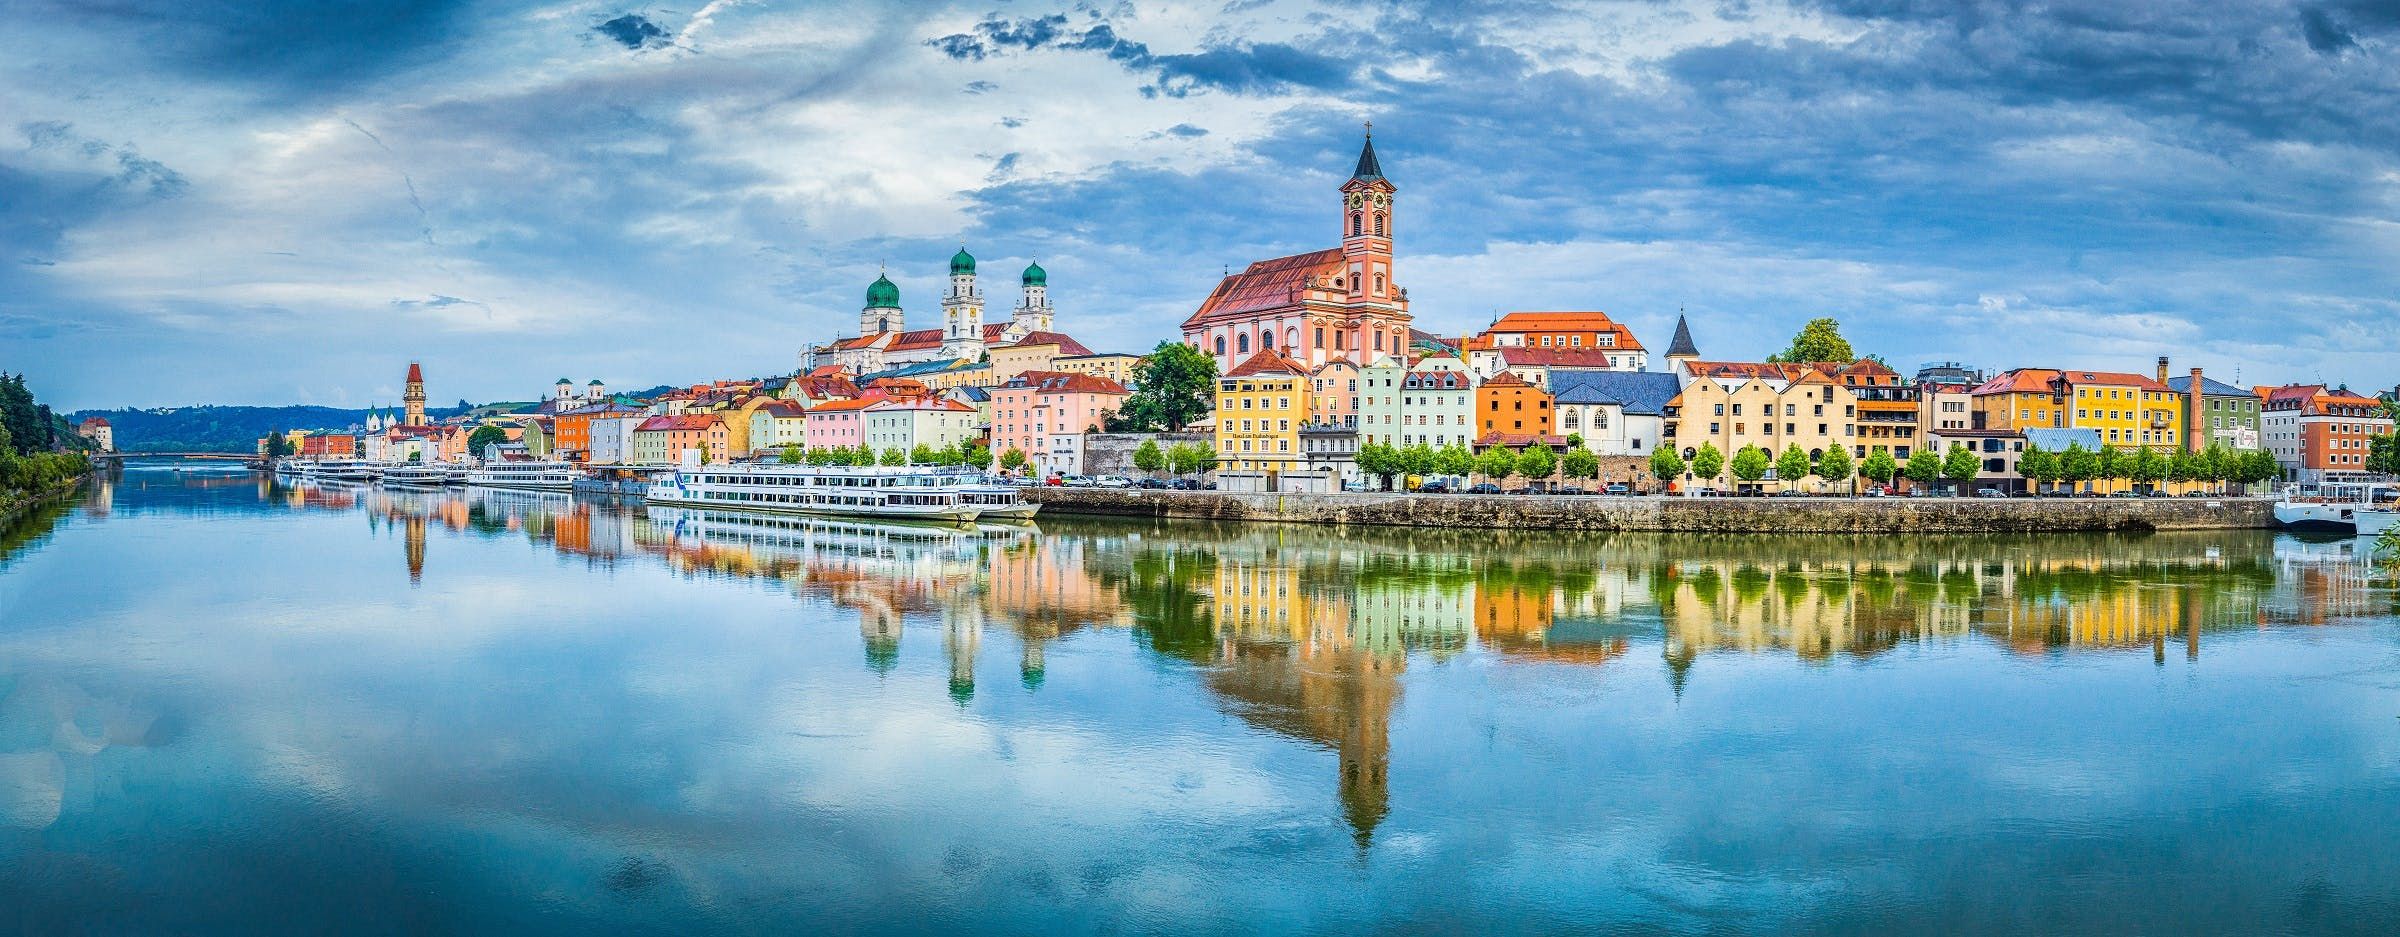 Imagen del tour: Tour romántico en Passau